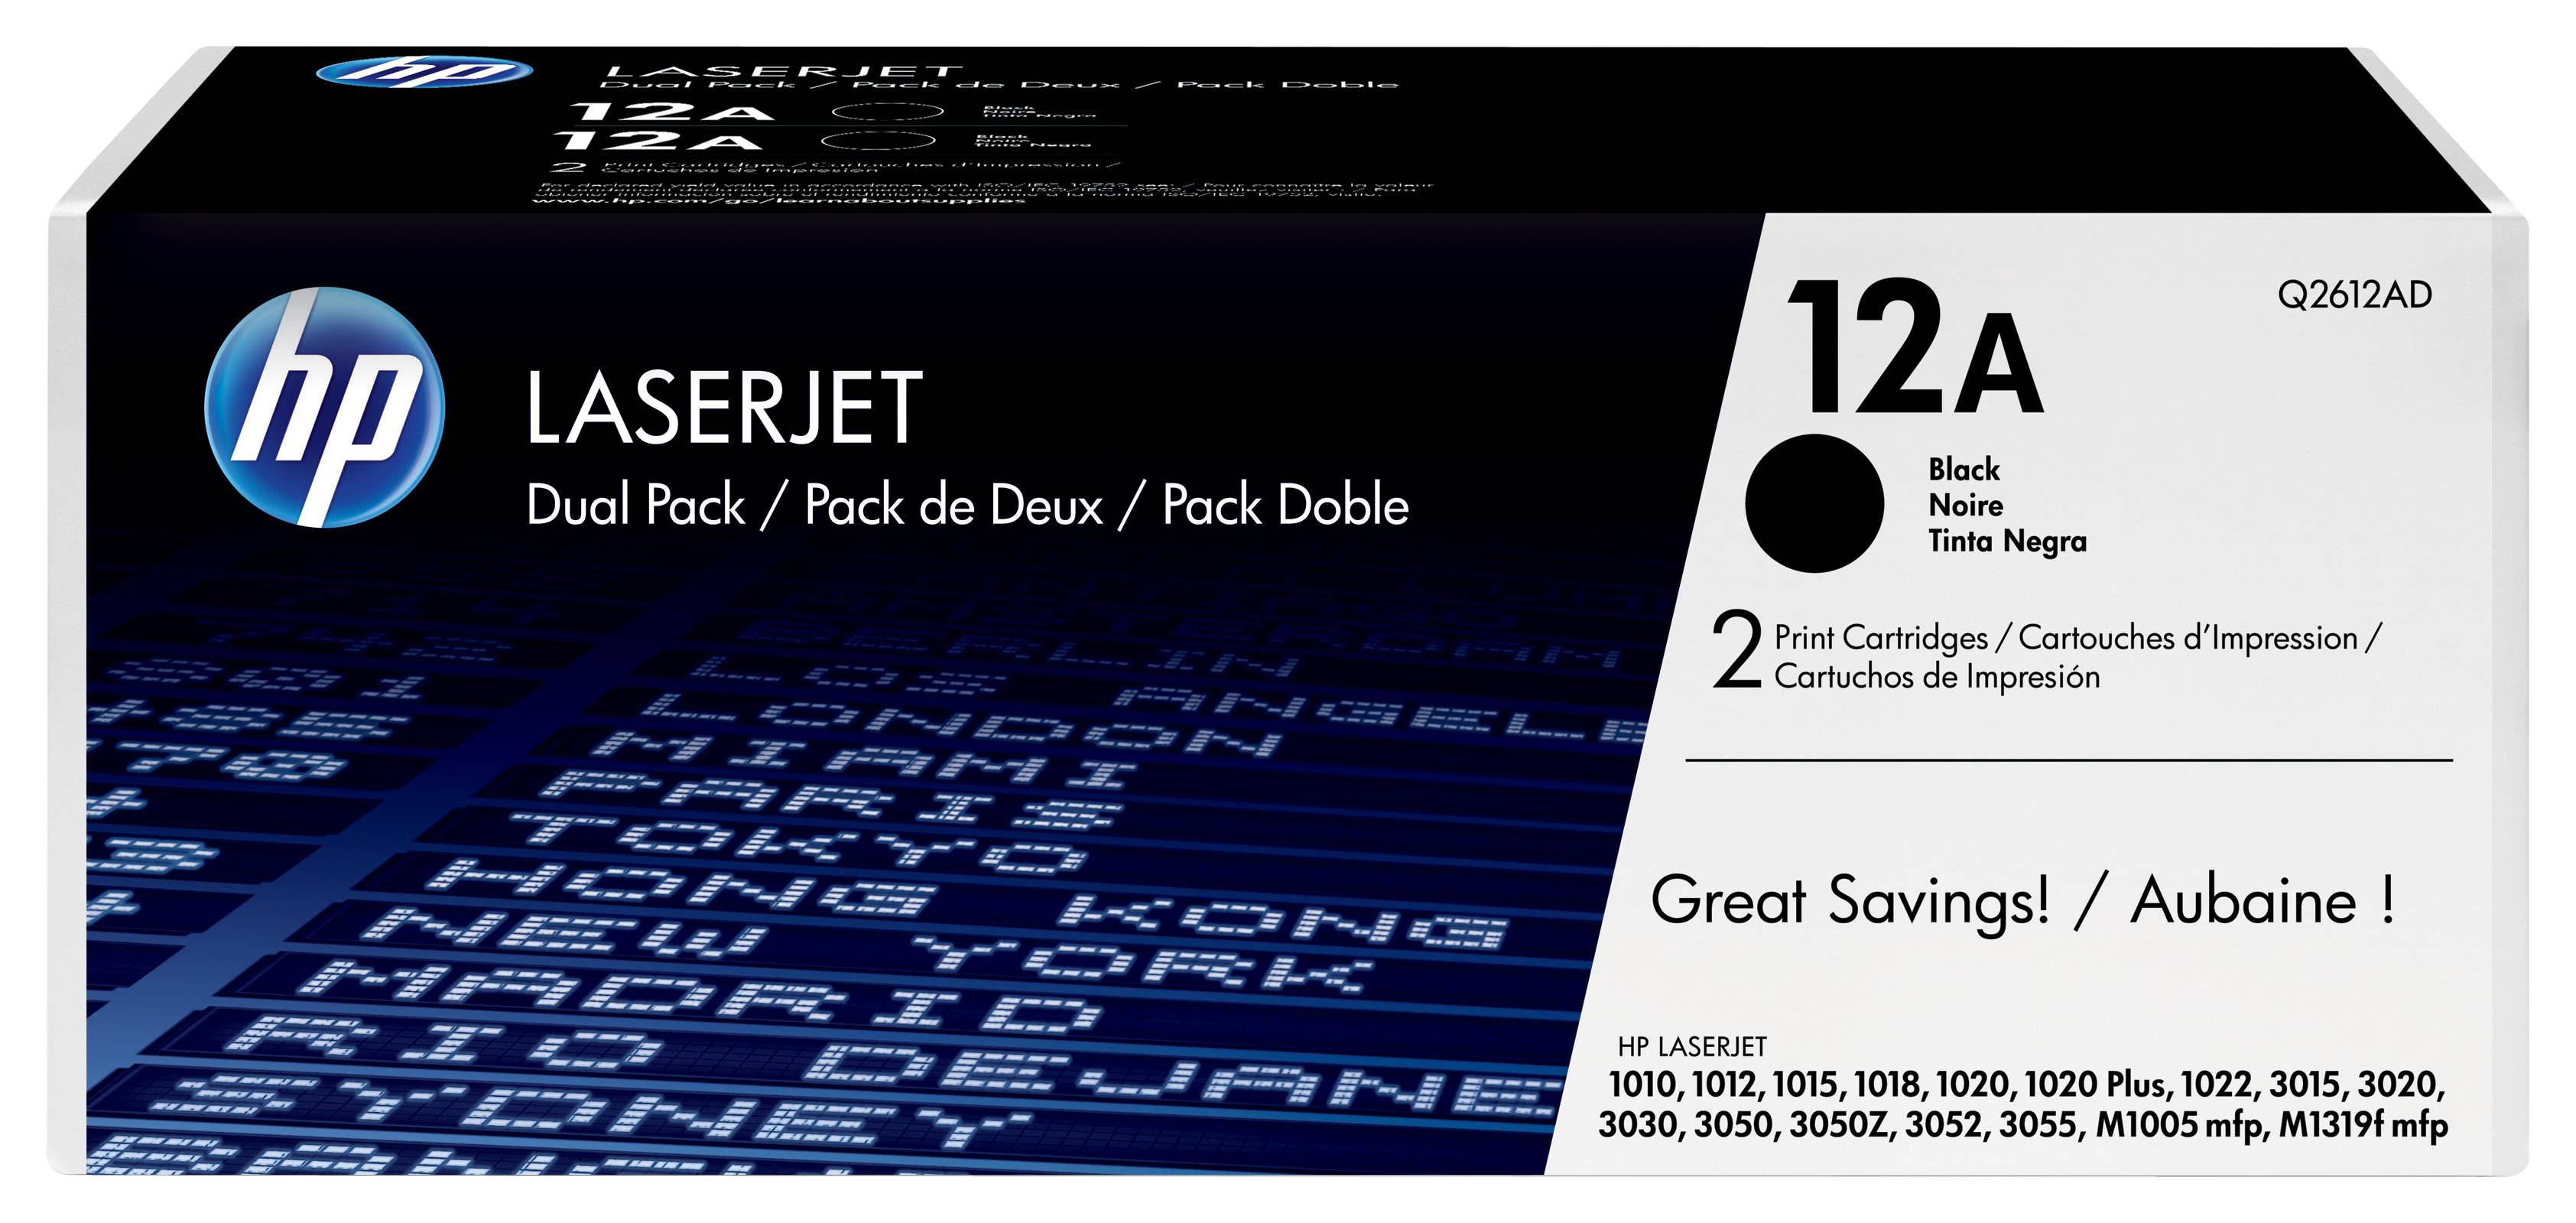 Rca Informatique - Image du produit : TONER CARTRIDGE 12A BLACK DUAL PACK